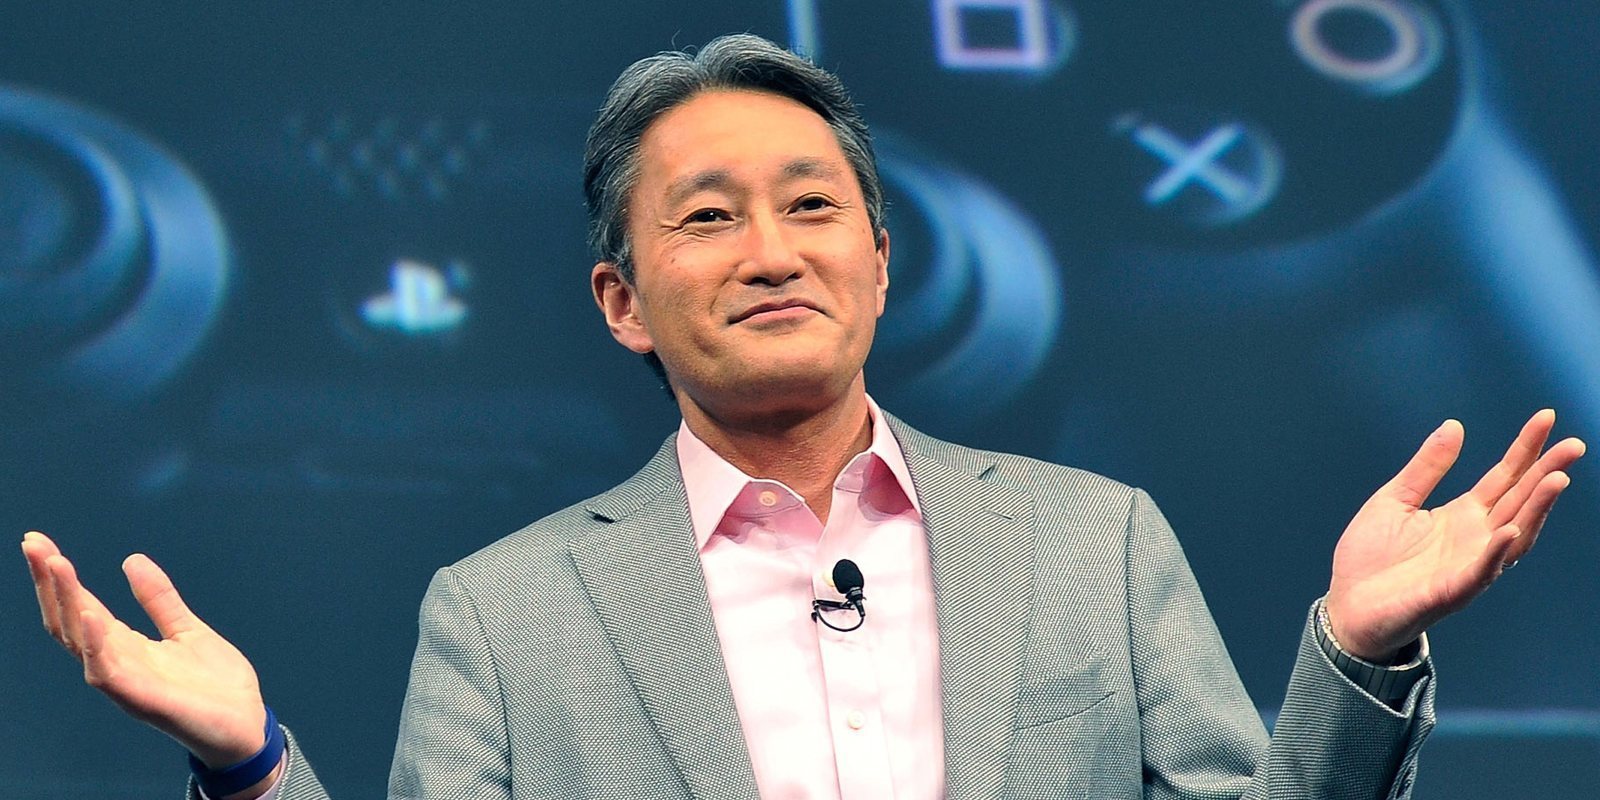 Kaz Hirai anuncia que dejará su puesto como presidente de Sony en junio